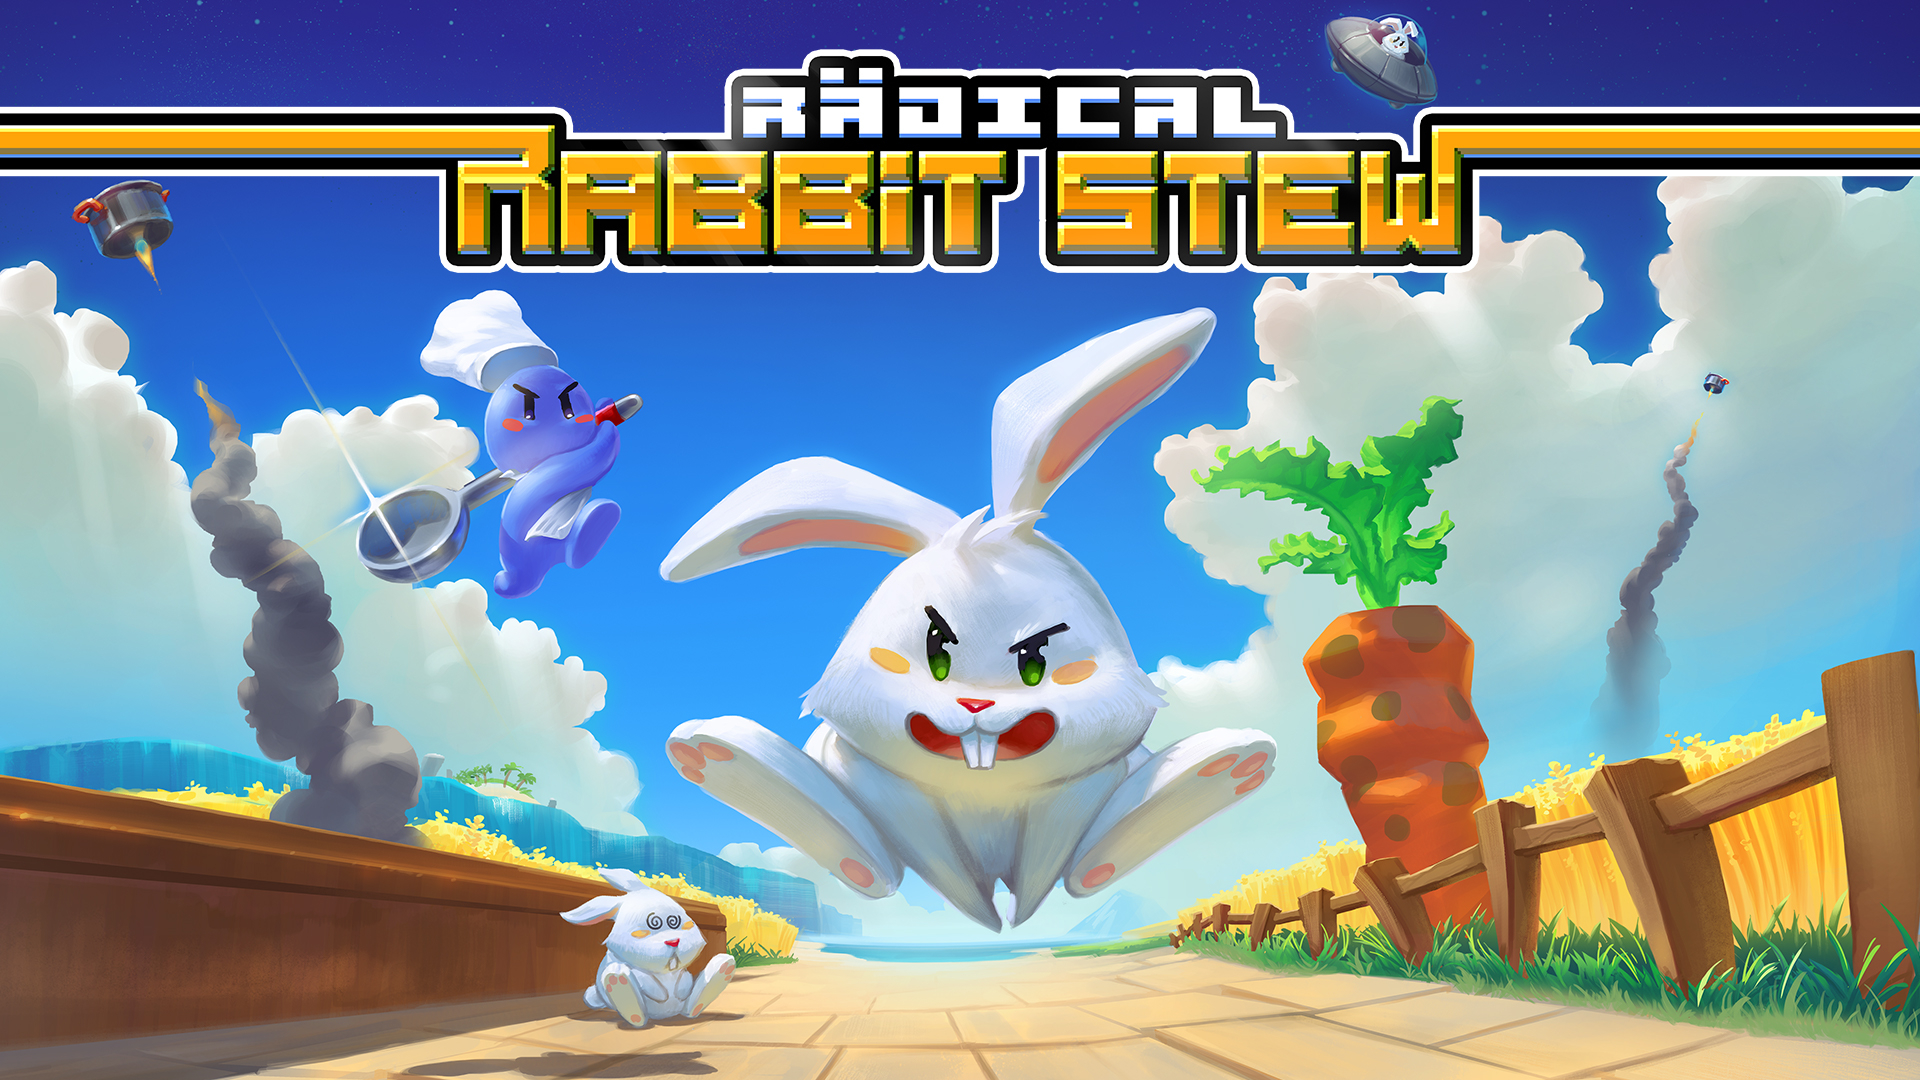 Обложка игры Radical Rabbit Stew